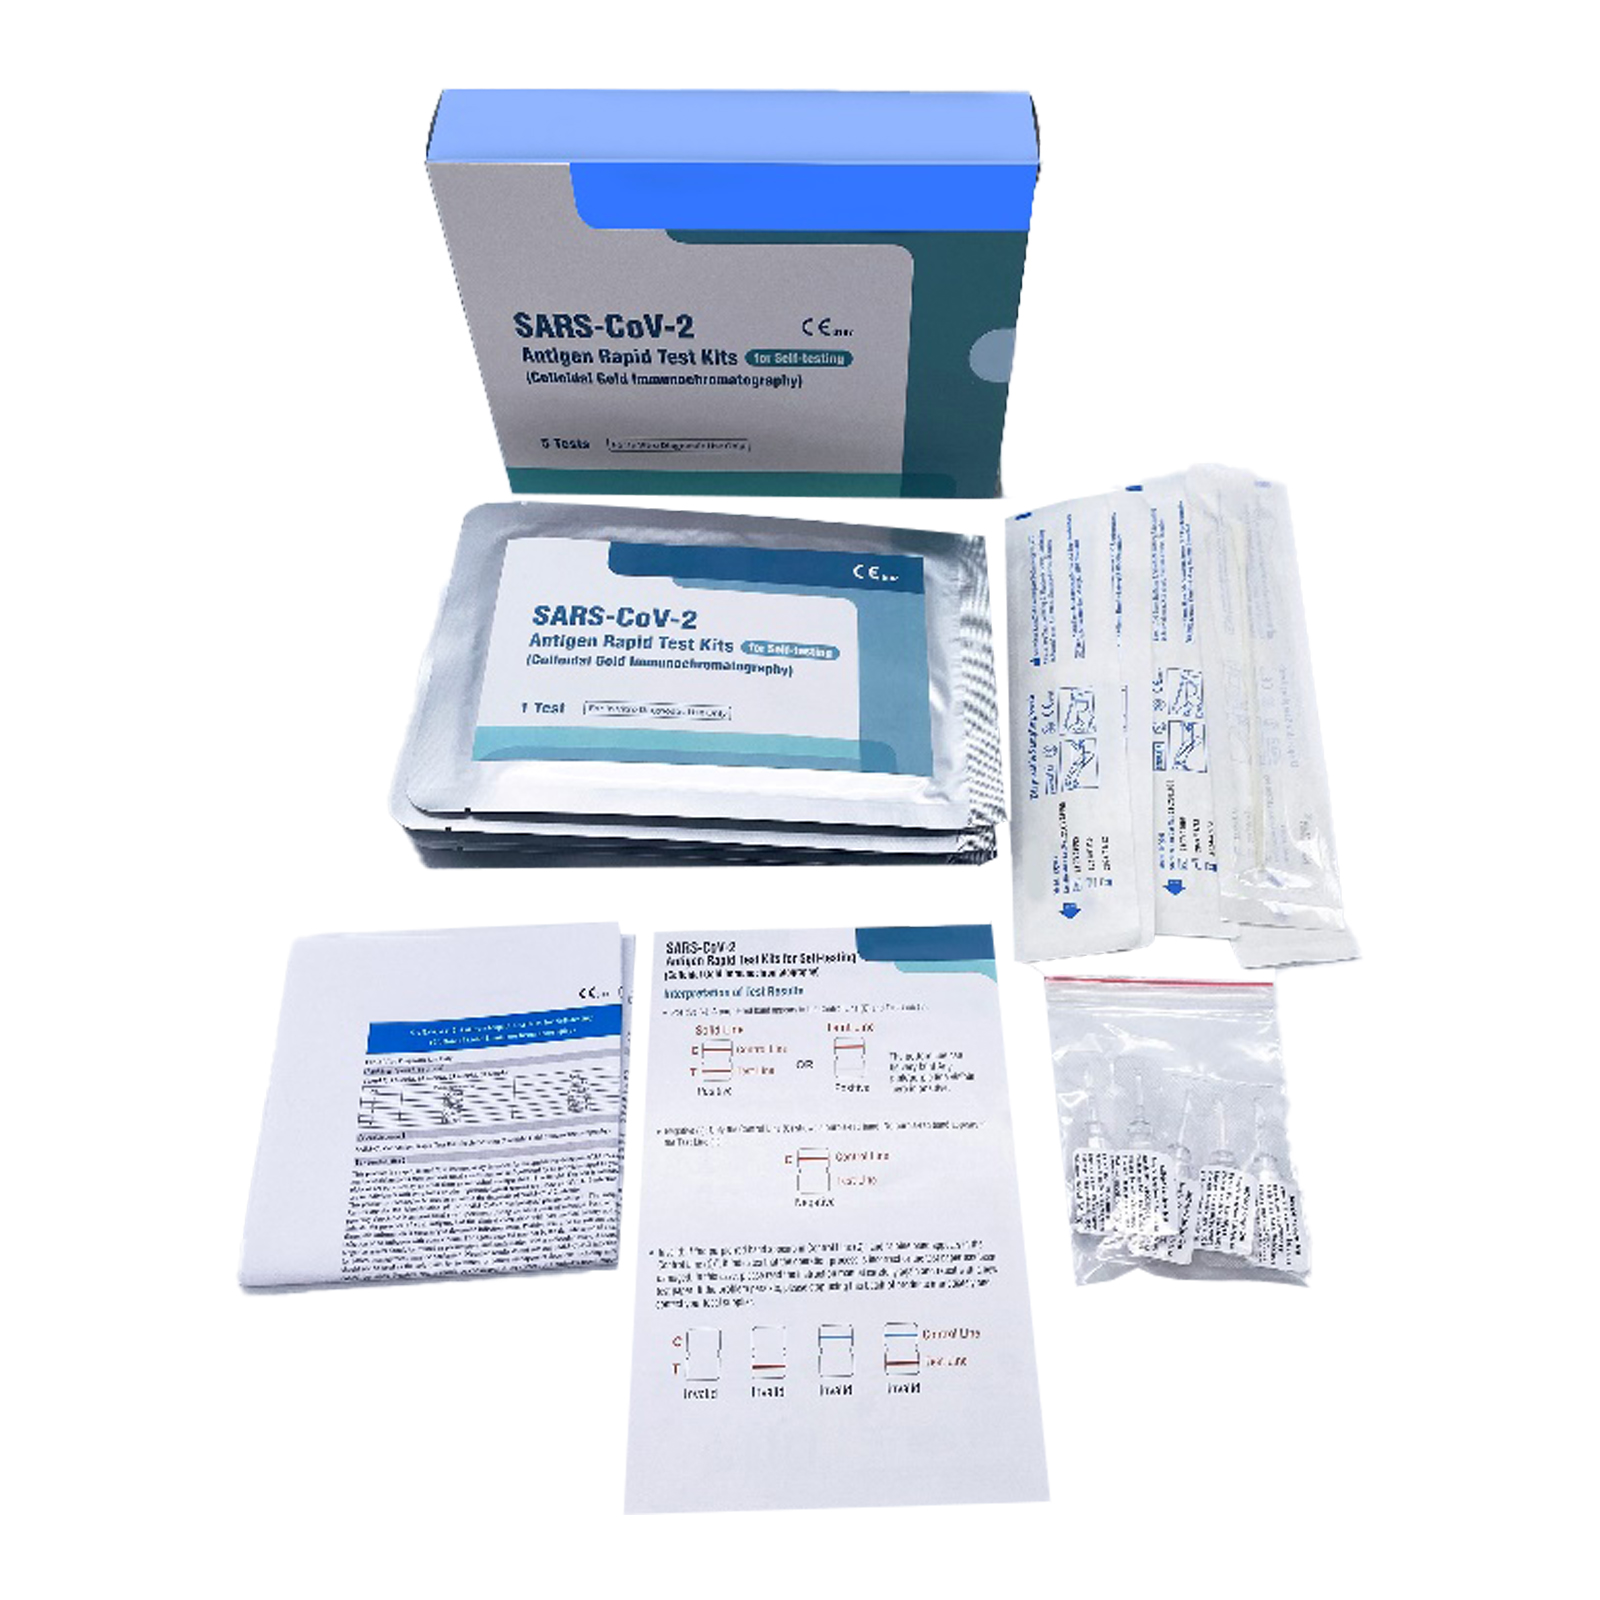 COVID-CARD-360 SARS-CoV-2 antigeen zelftest kaart CE (wattenstaafje), verpakt per 5 stuks in een doosje, 360 stuks in een karton.